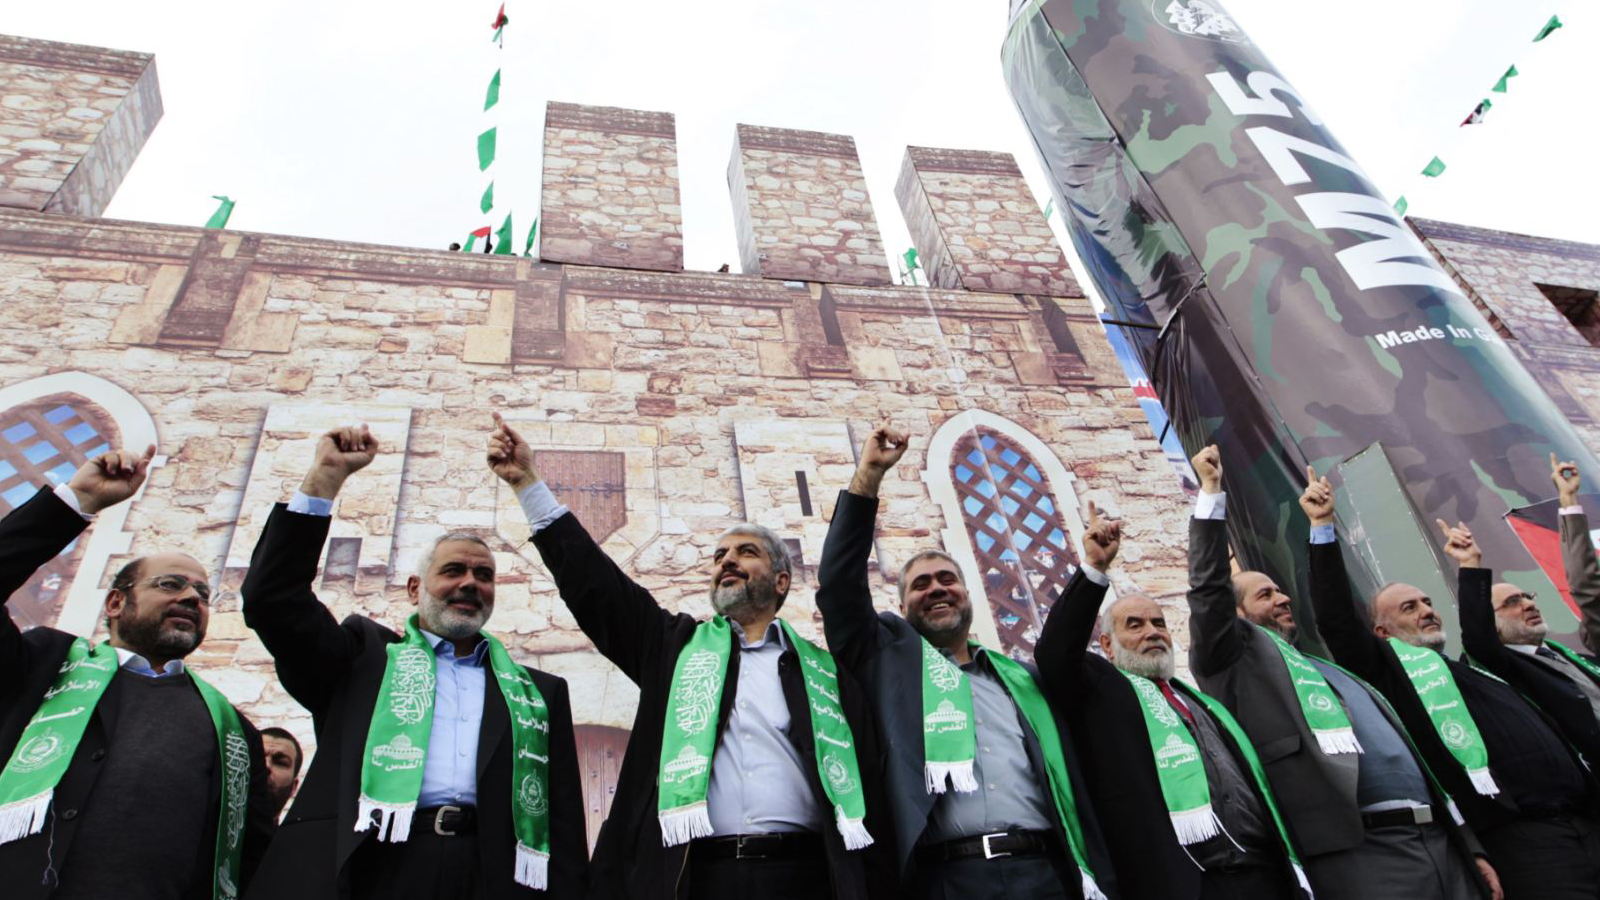 وثيقة "حماس"الوشيكة:مراجعة للهوية والعلاقات الدولية